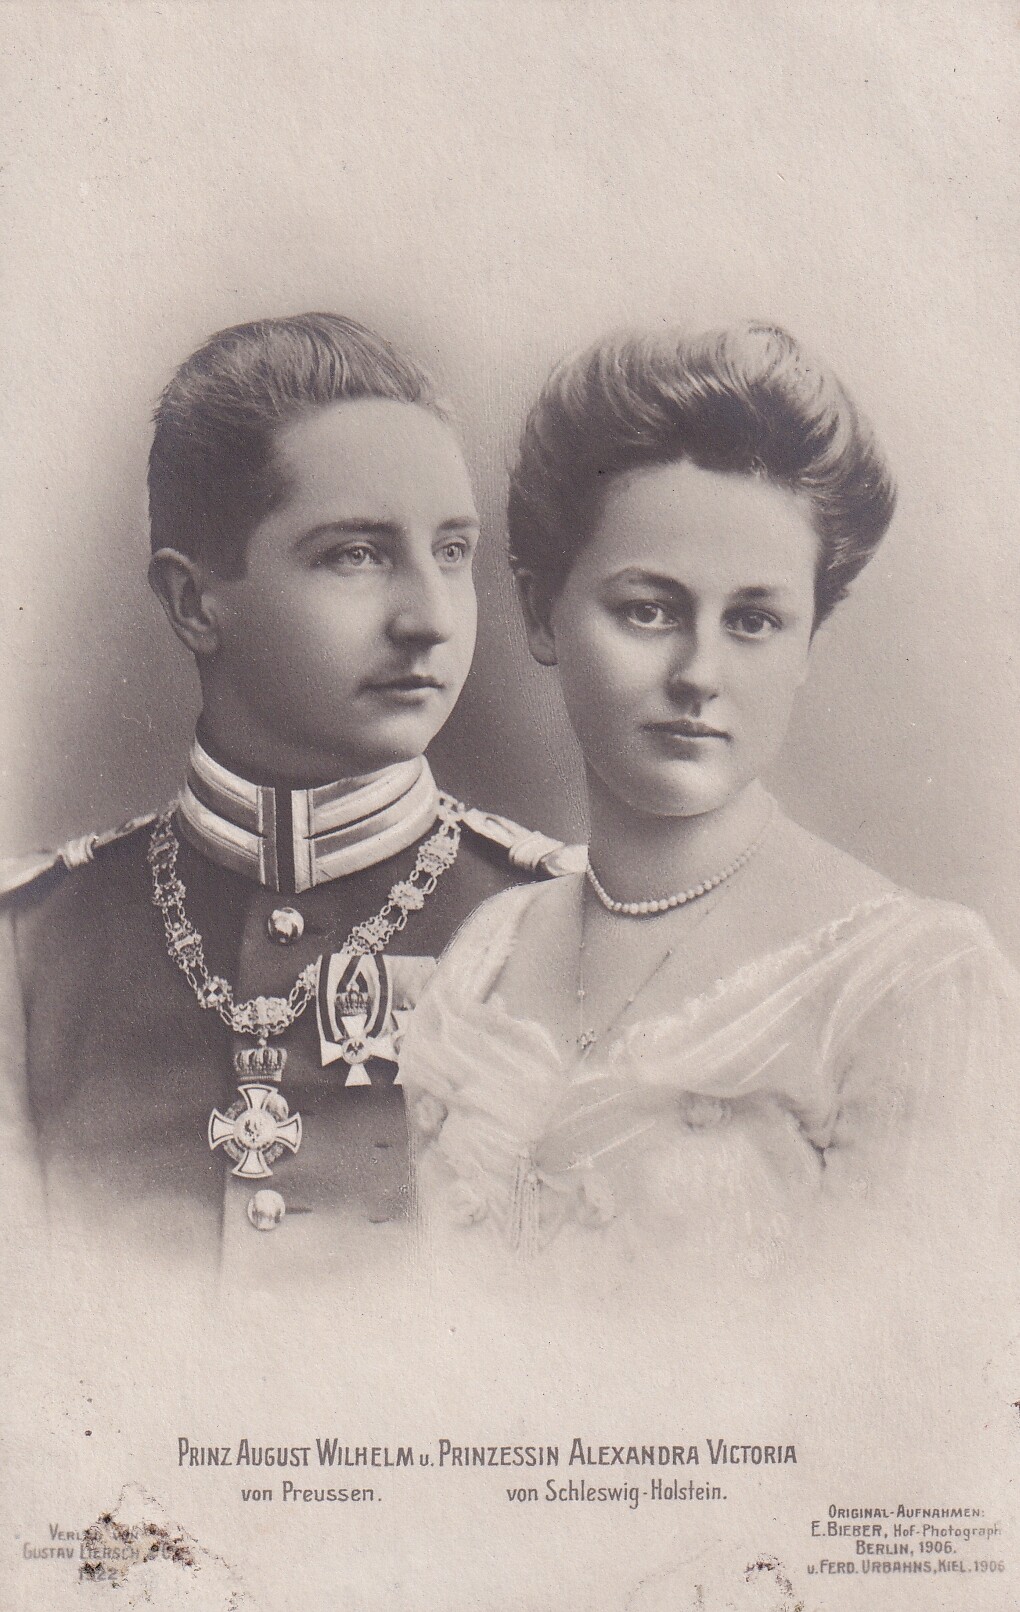 Bildpostkarte mit Fotomontage des Prinzen August Wilhelm von Preußen mit seiner Verlobten Alexandra Victoria, 1906 (Schloß Wernigerode GmbH RR-F)